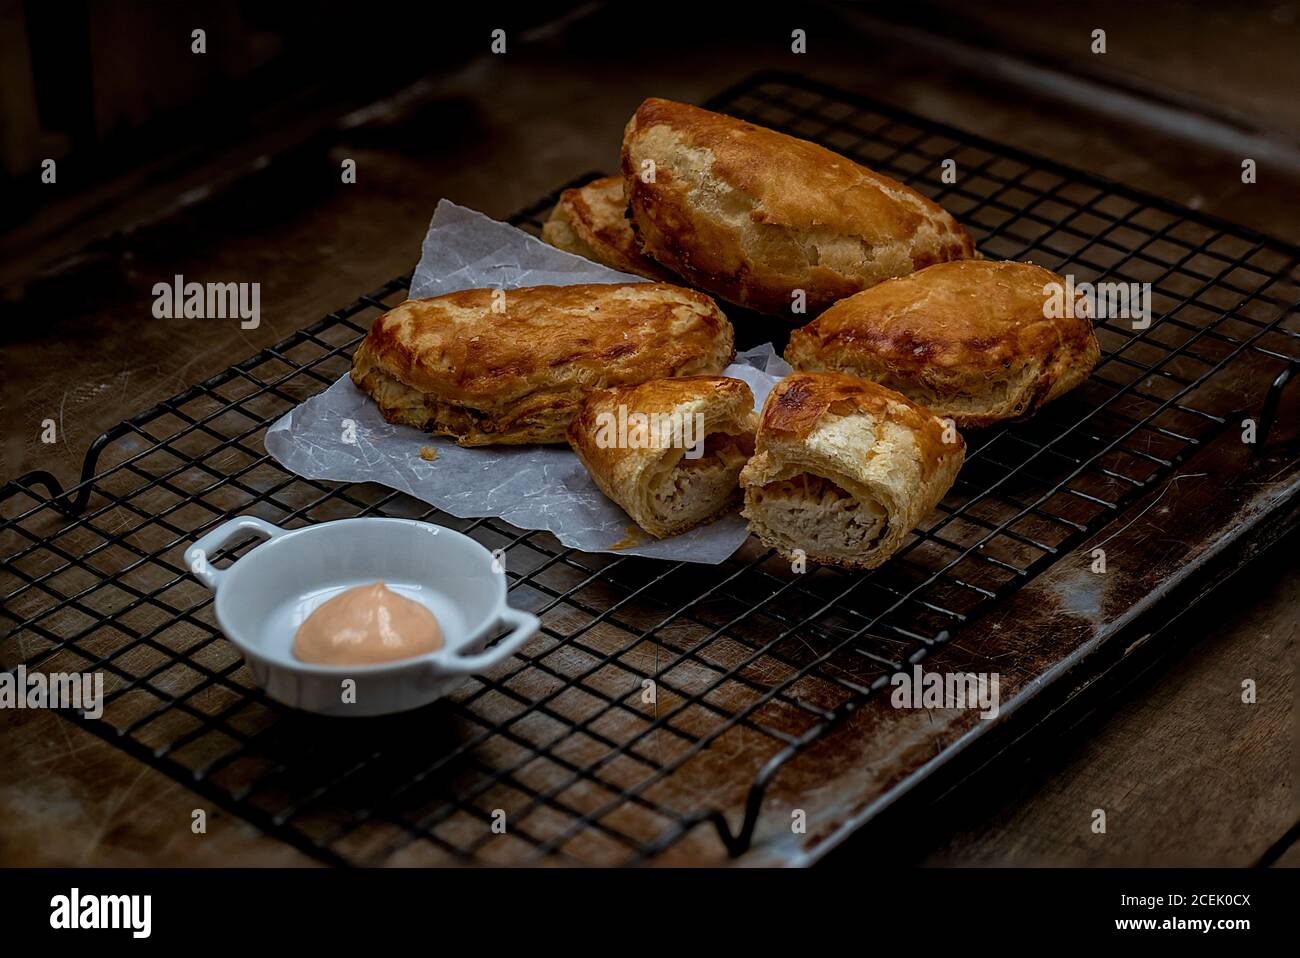 Vue du dessus de la pâte feuilletée placée sur la grille de cuisson et un bol de sauce placé près de Banque D'Images